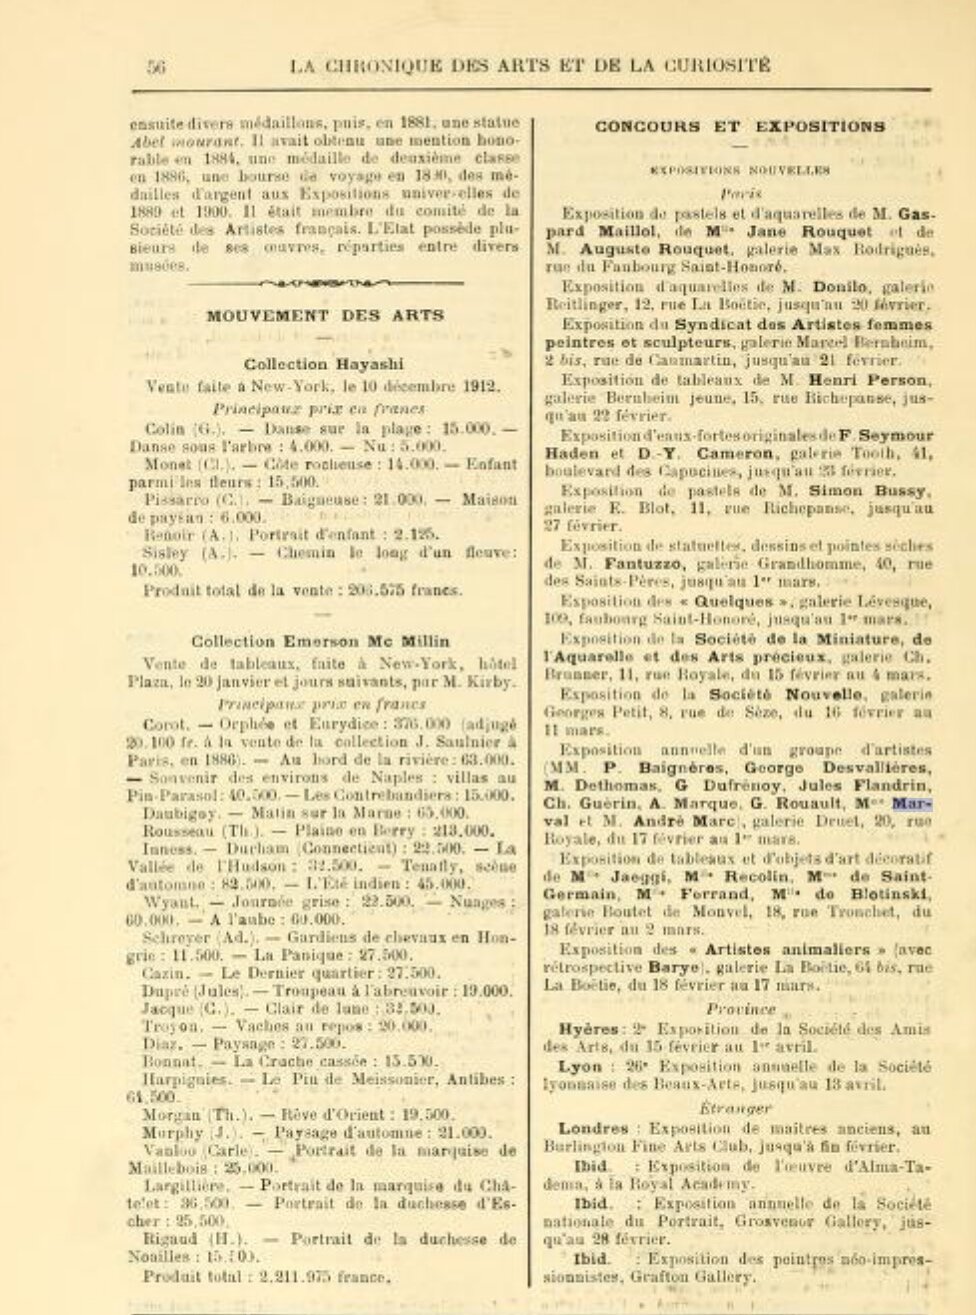 Chronique des Arts et de la Curiosité, Gazette des Beaux-Arts, février 1913 (Copy)